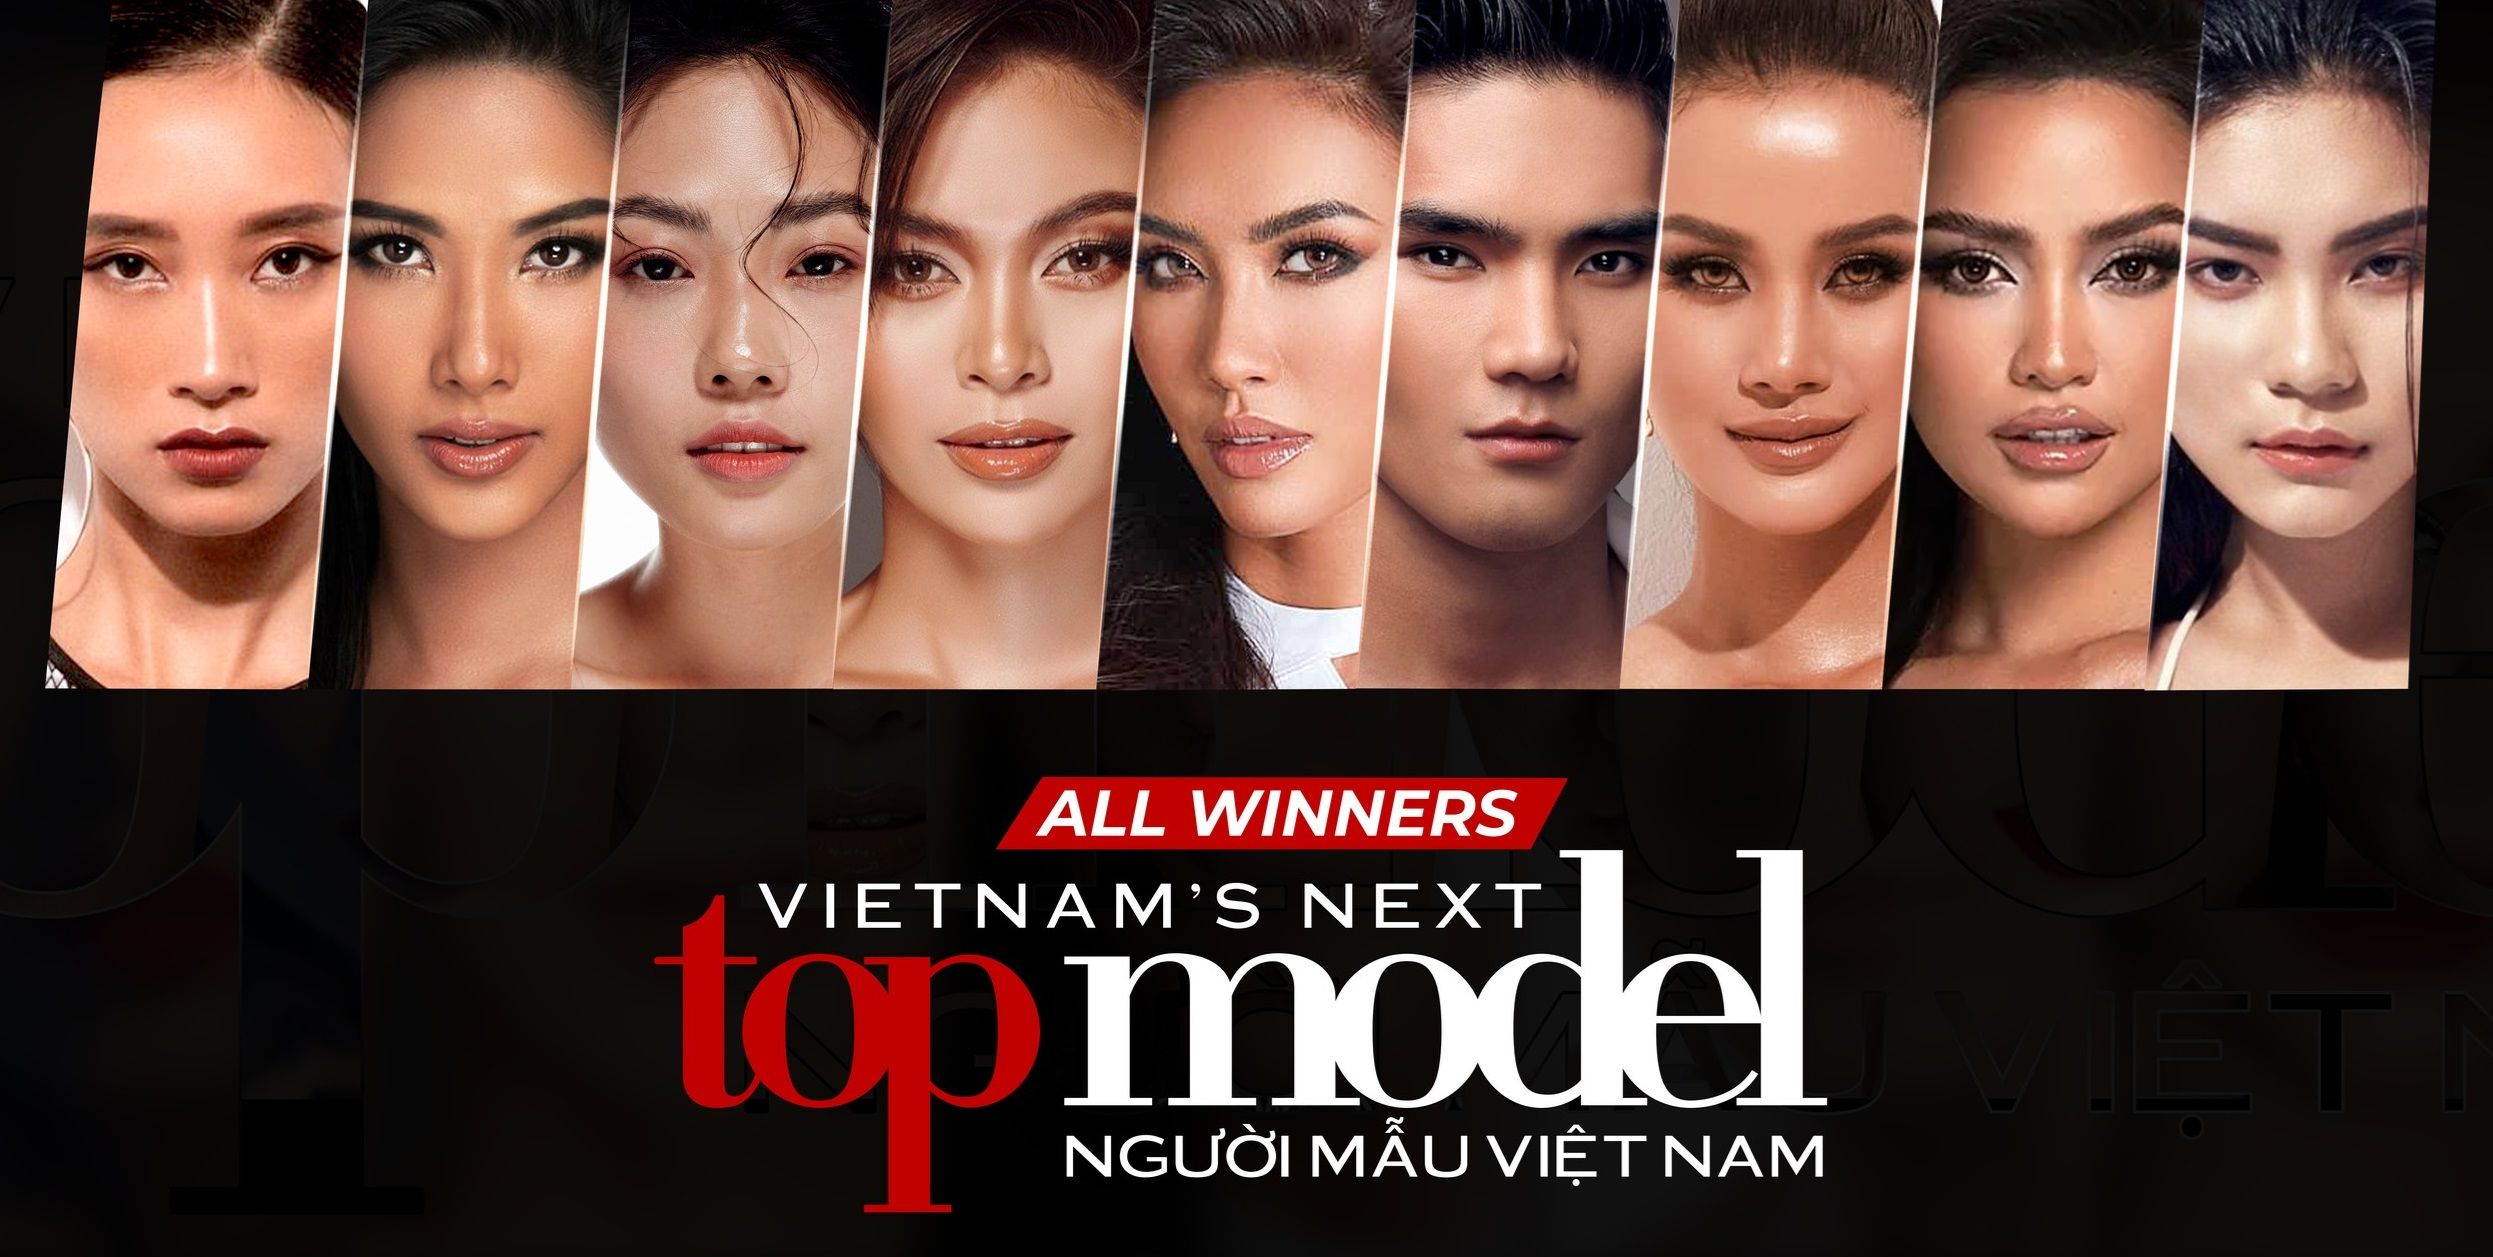 Vietnam's Next Top Model trở lại sau 7 năm, có gì đáng mong chờ? - 1